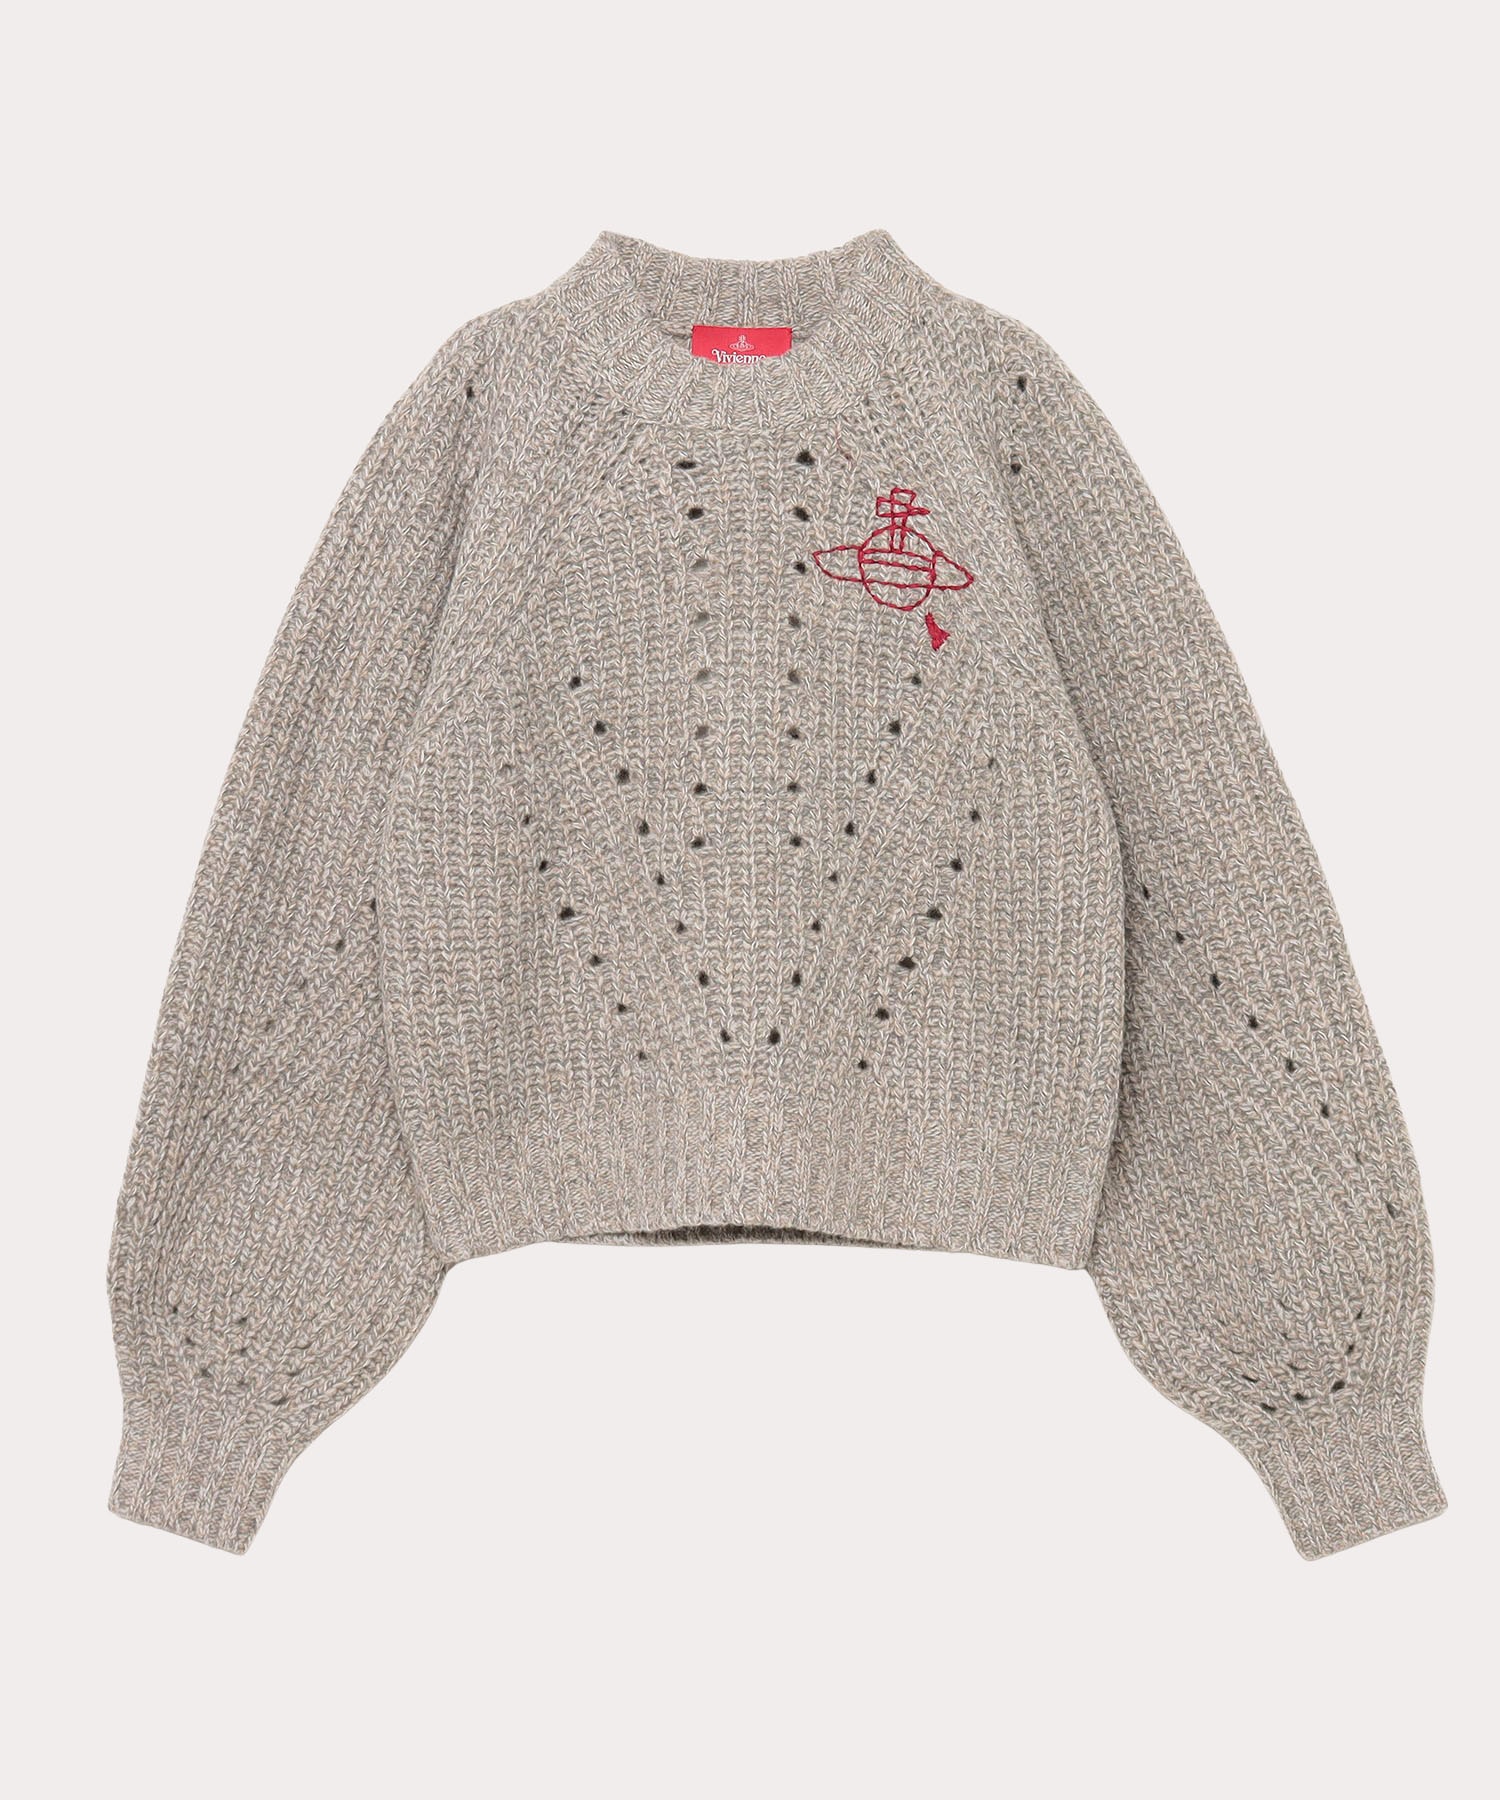 Vivienne Westwood ニットニット/セーター - ニット/セーター